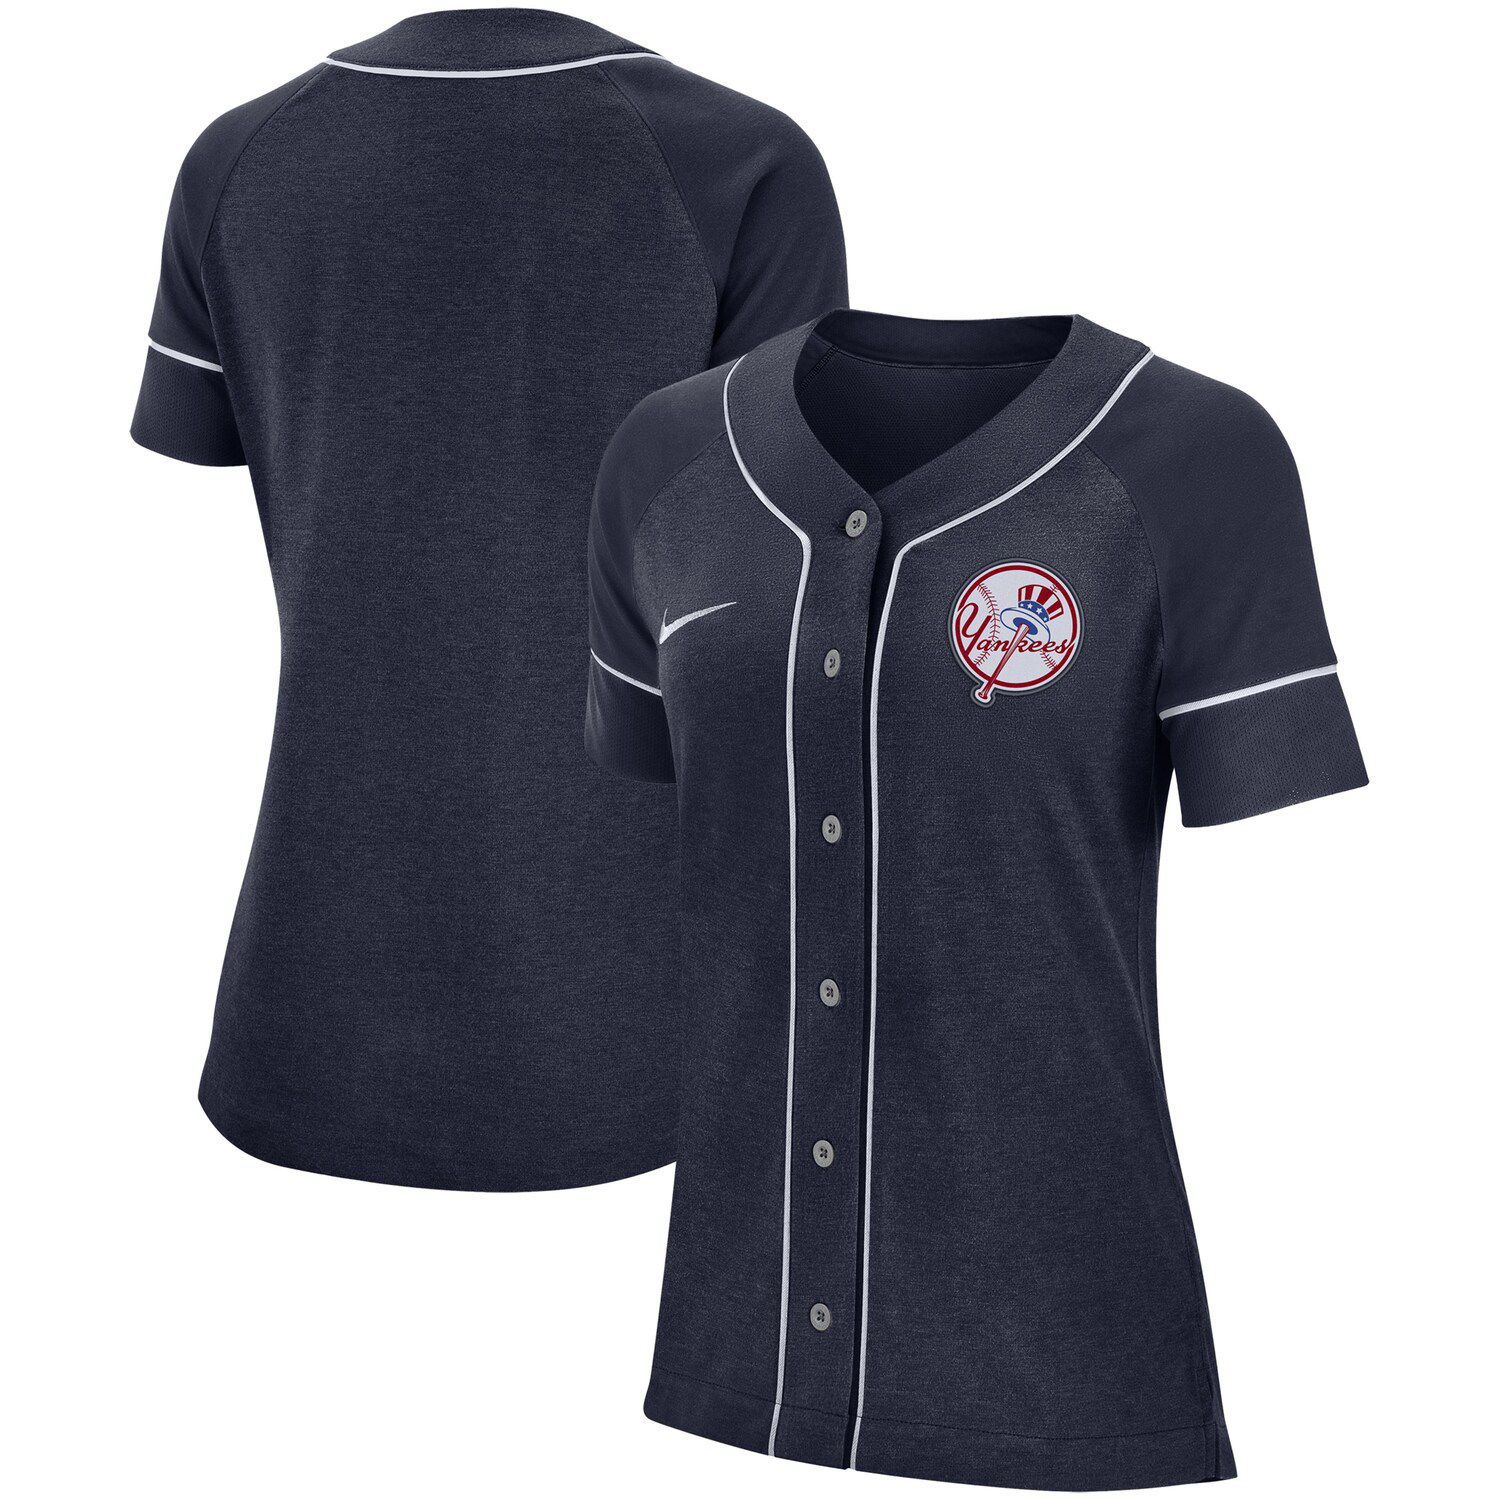 button up baseball jersey womens